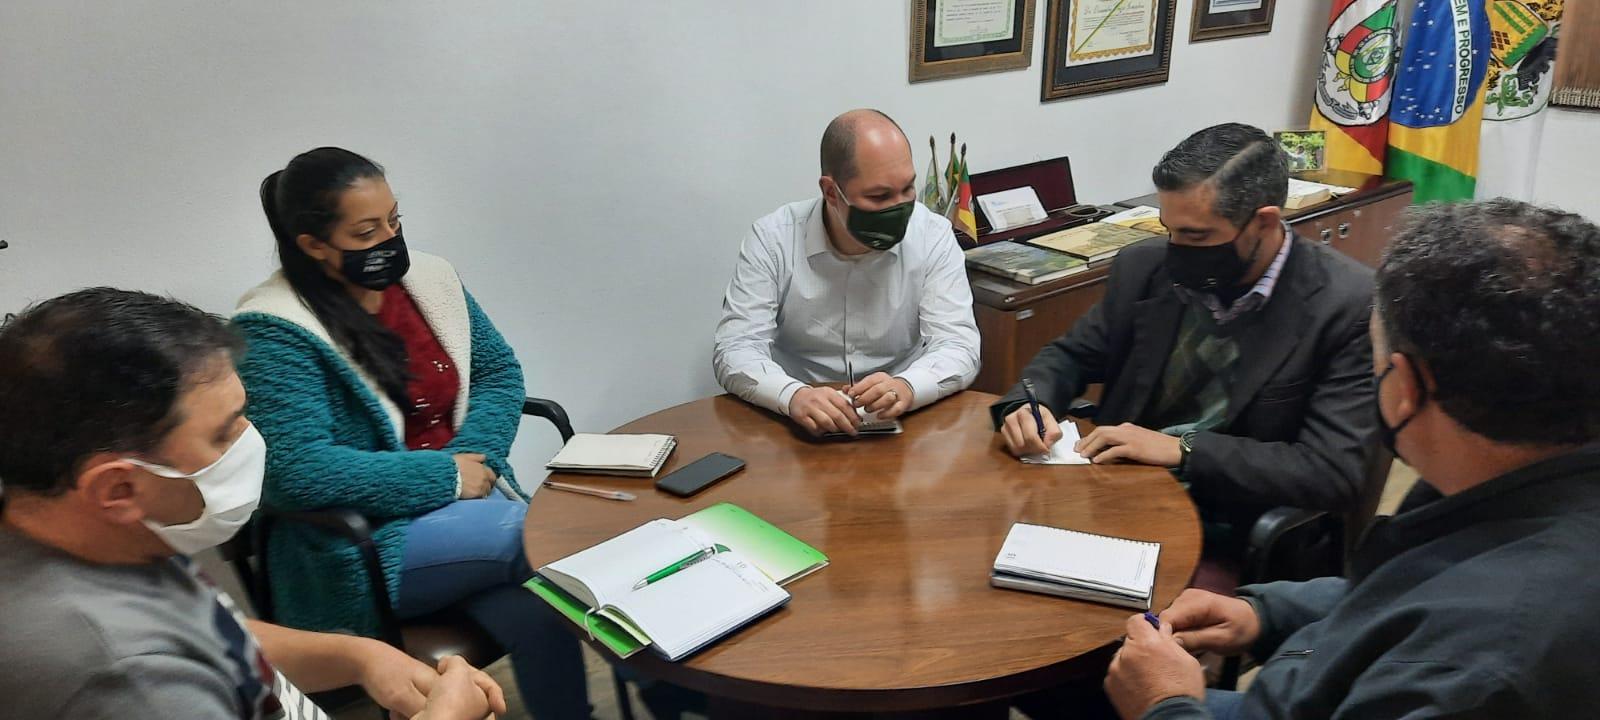 Vereador Juliano Valim participou de reunião sobre abertura de centro de convivência na região de Ana Rech - Serrano.